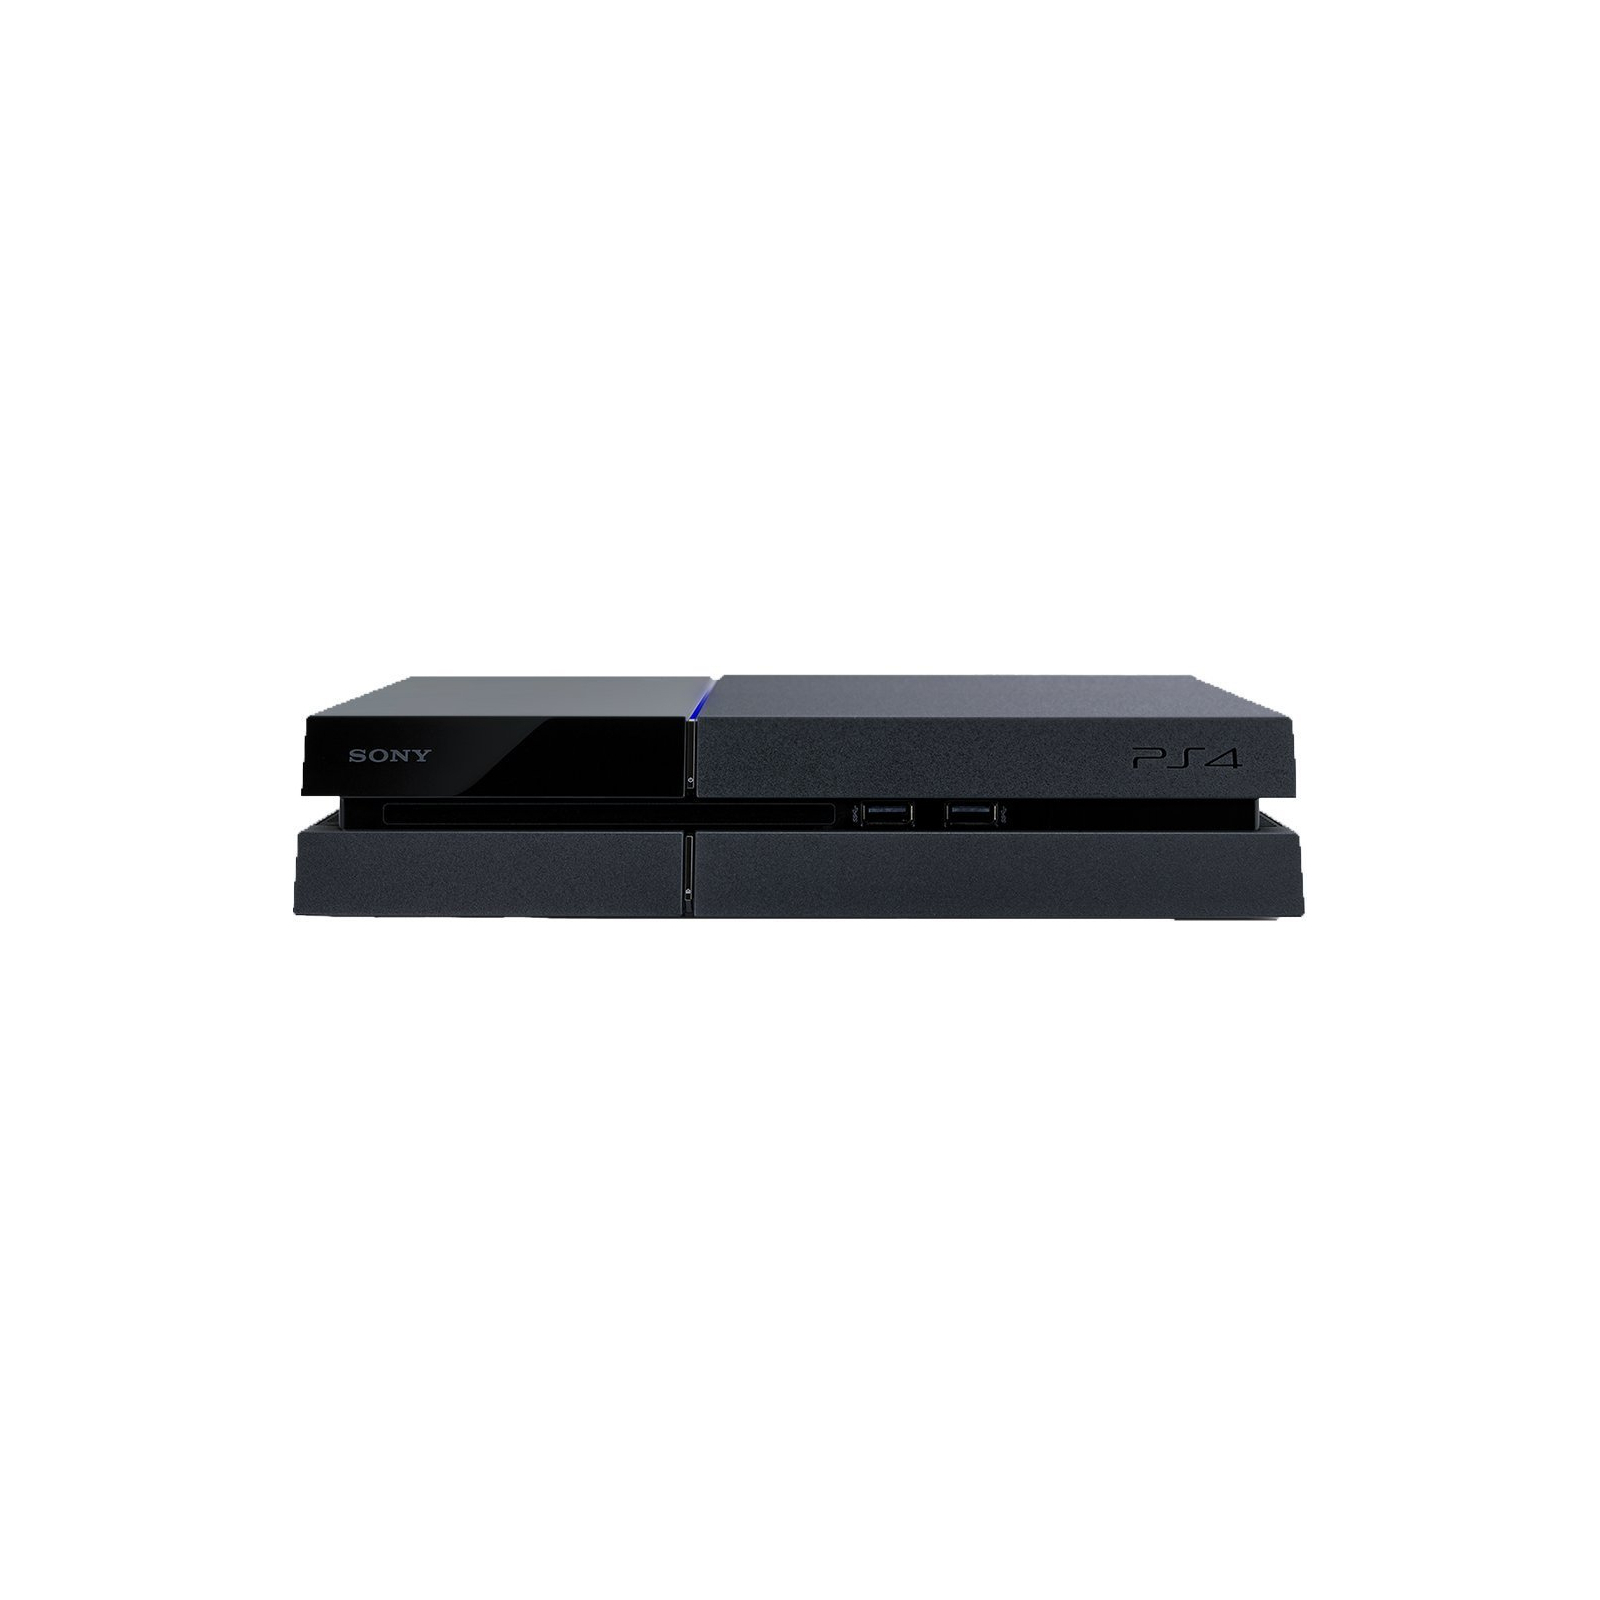 Игровая консоль Sony PlayStation 4 500GB Black (PS719437512) изображение 2